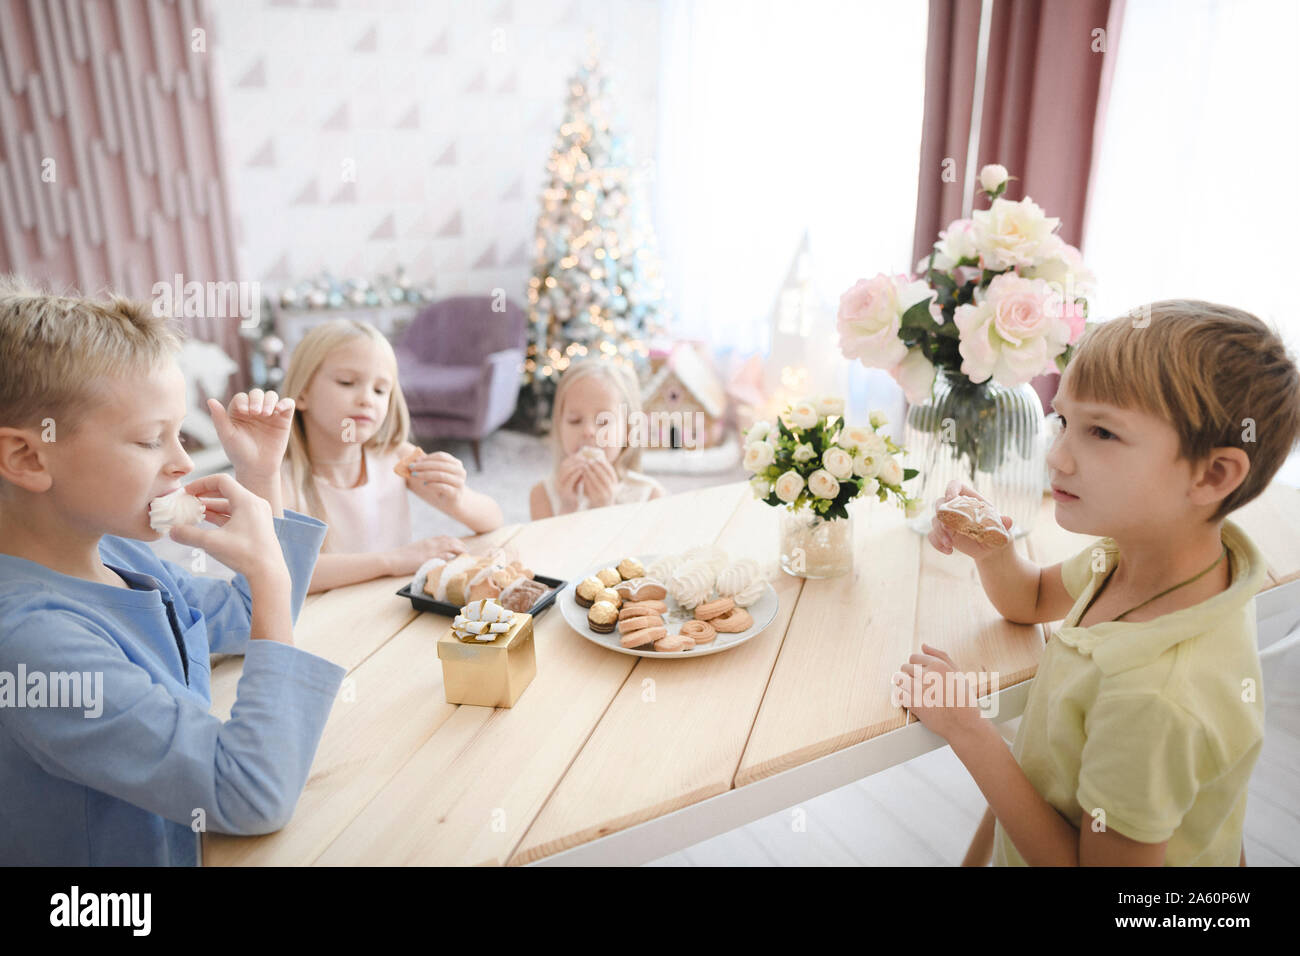 Quatre enfants de manger des cookies à la maison Banque D'Images